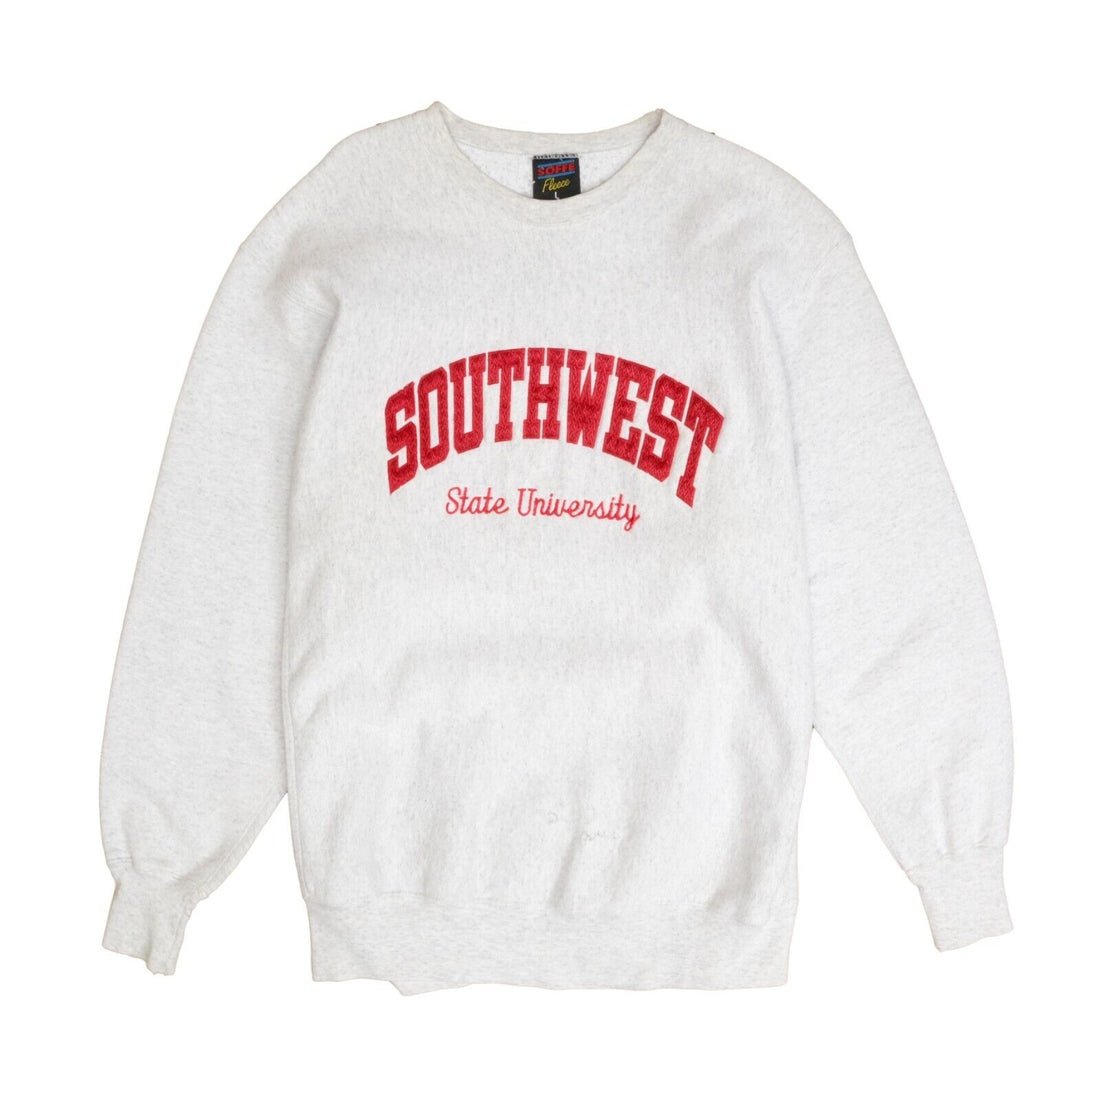 Vintage Southwest State University Sweatshirt Crewneck Size Large Gray